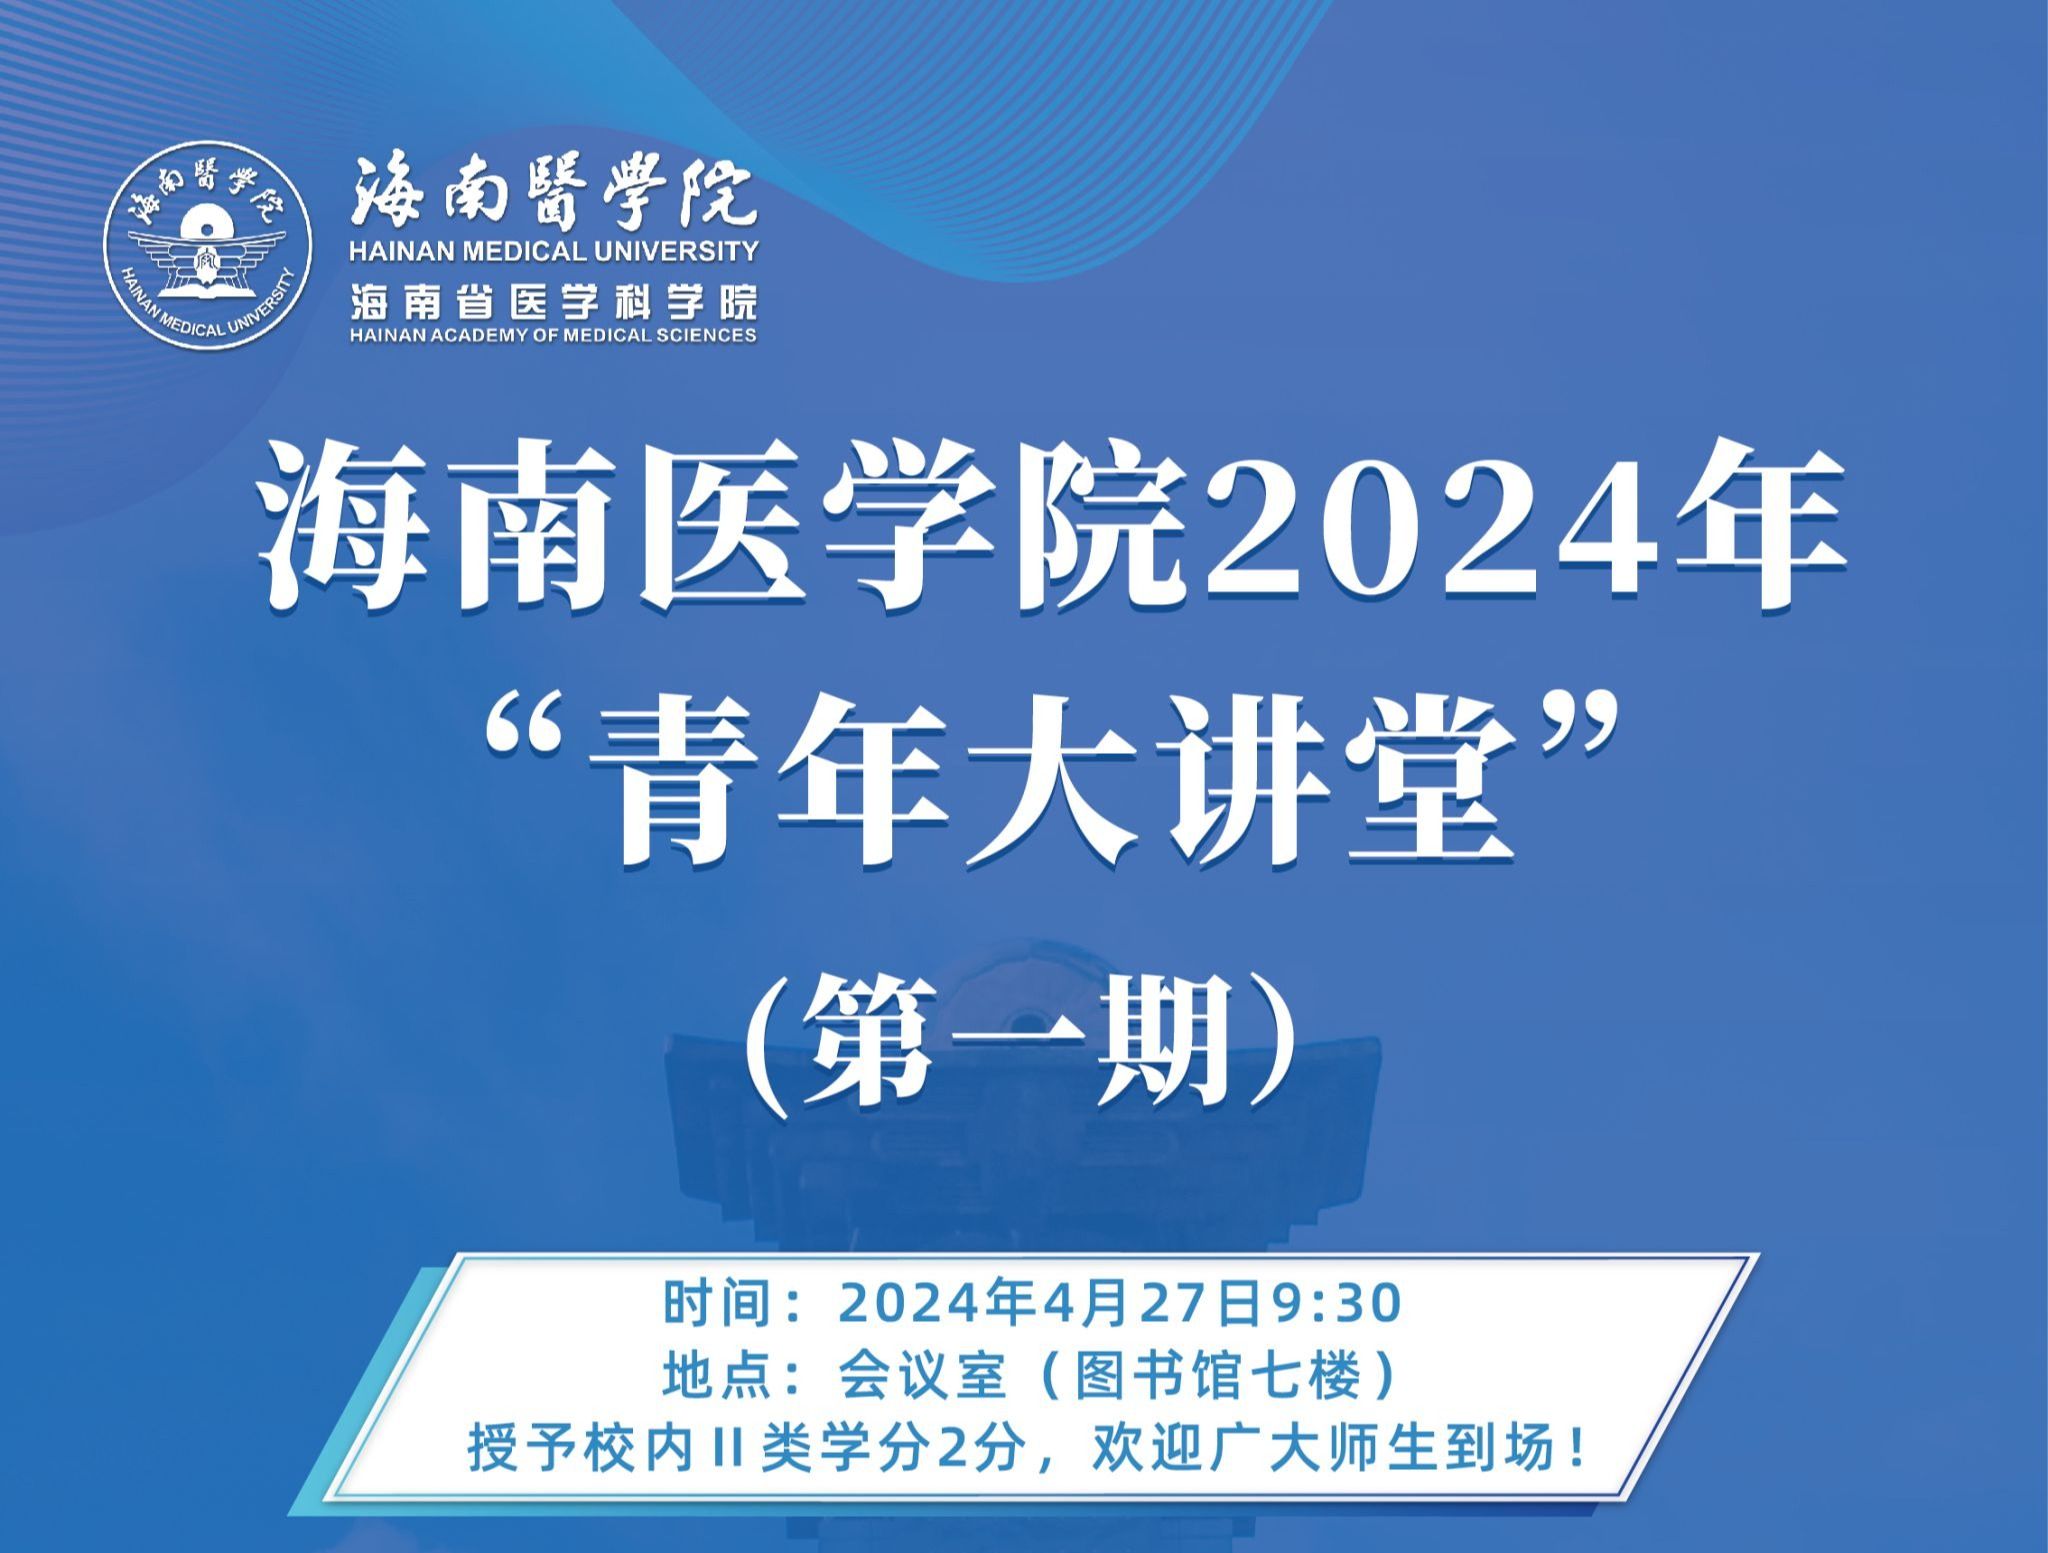 海南医学院2024年“青年大讲堂”第一期